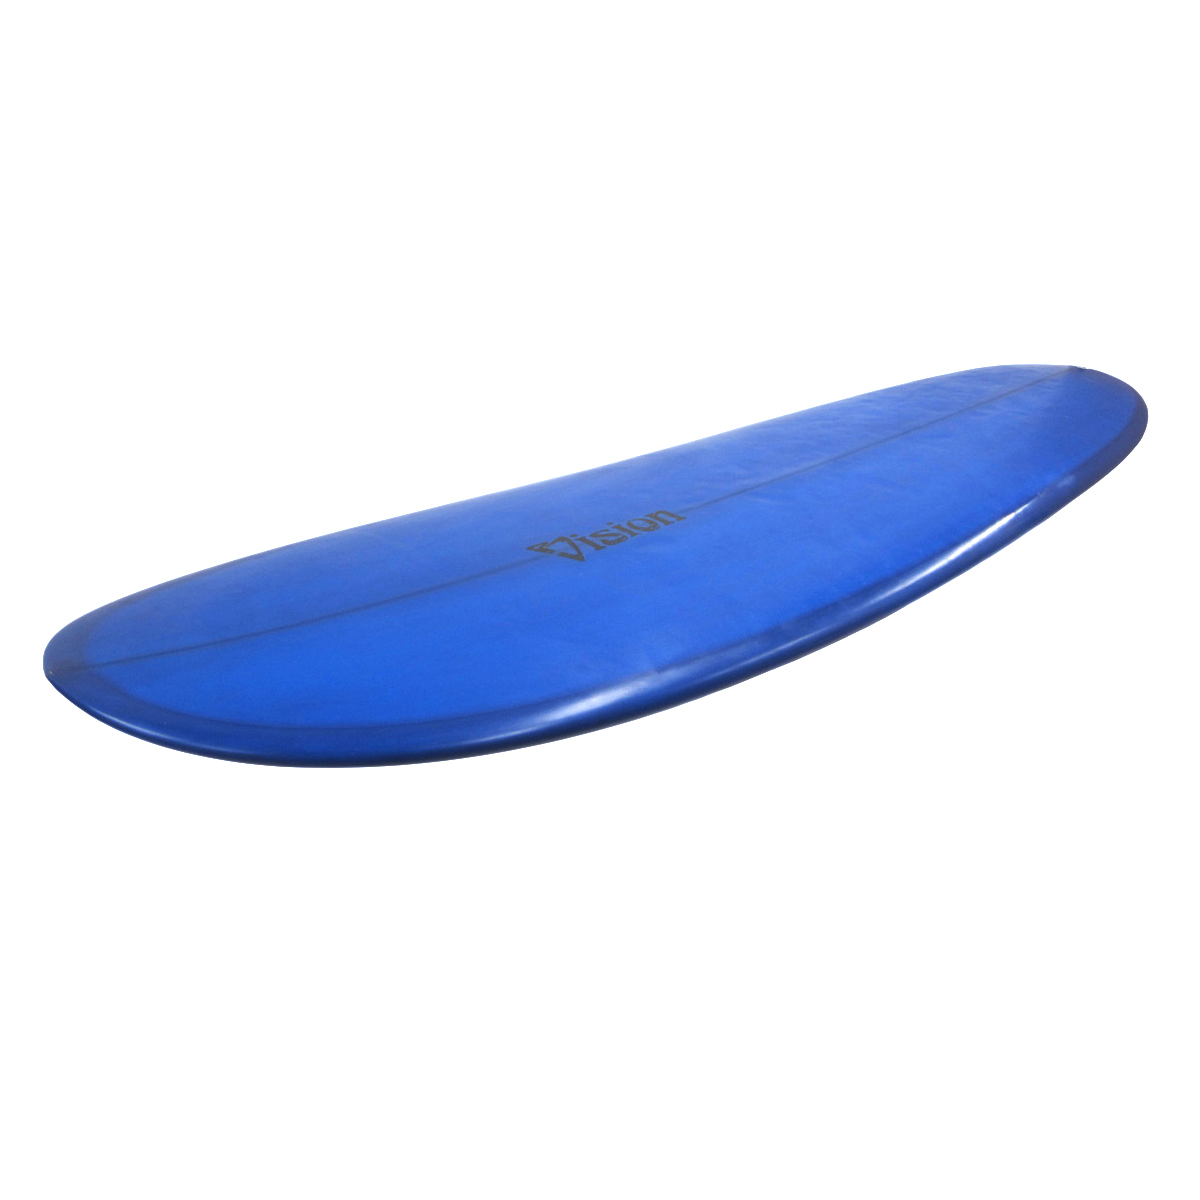 VISION SURFBOARDS  / 6`10 Egg Custom